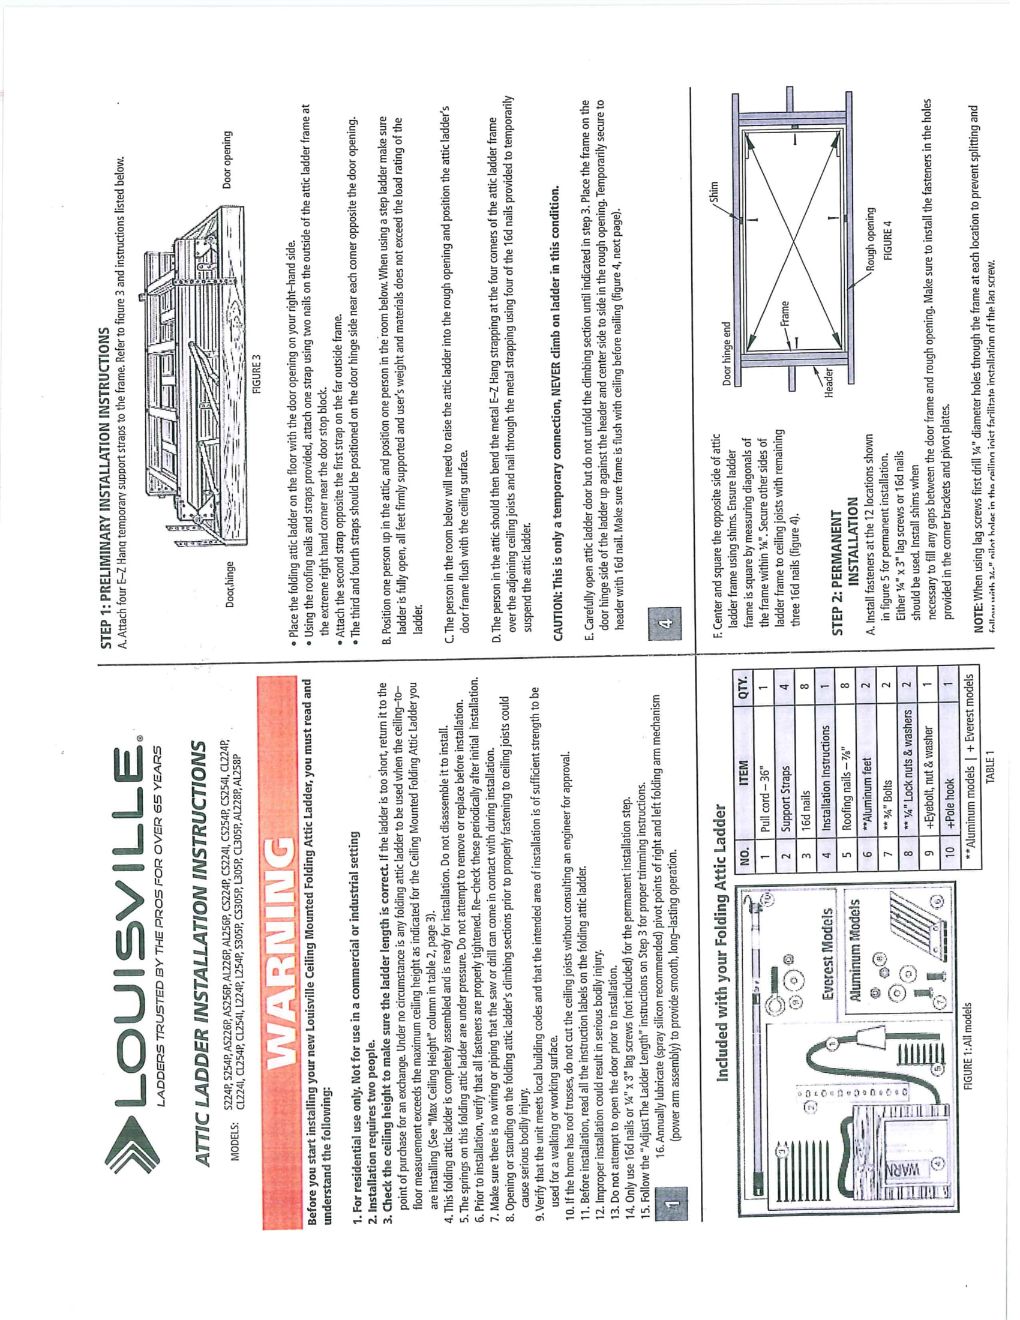 Attic Ladder Installation Instructions, 1-sheet Marketing Material Image